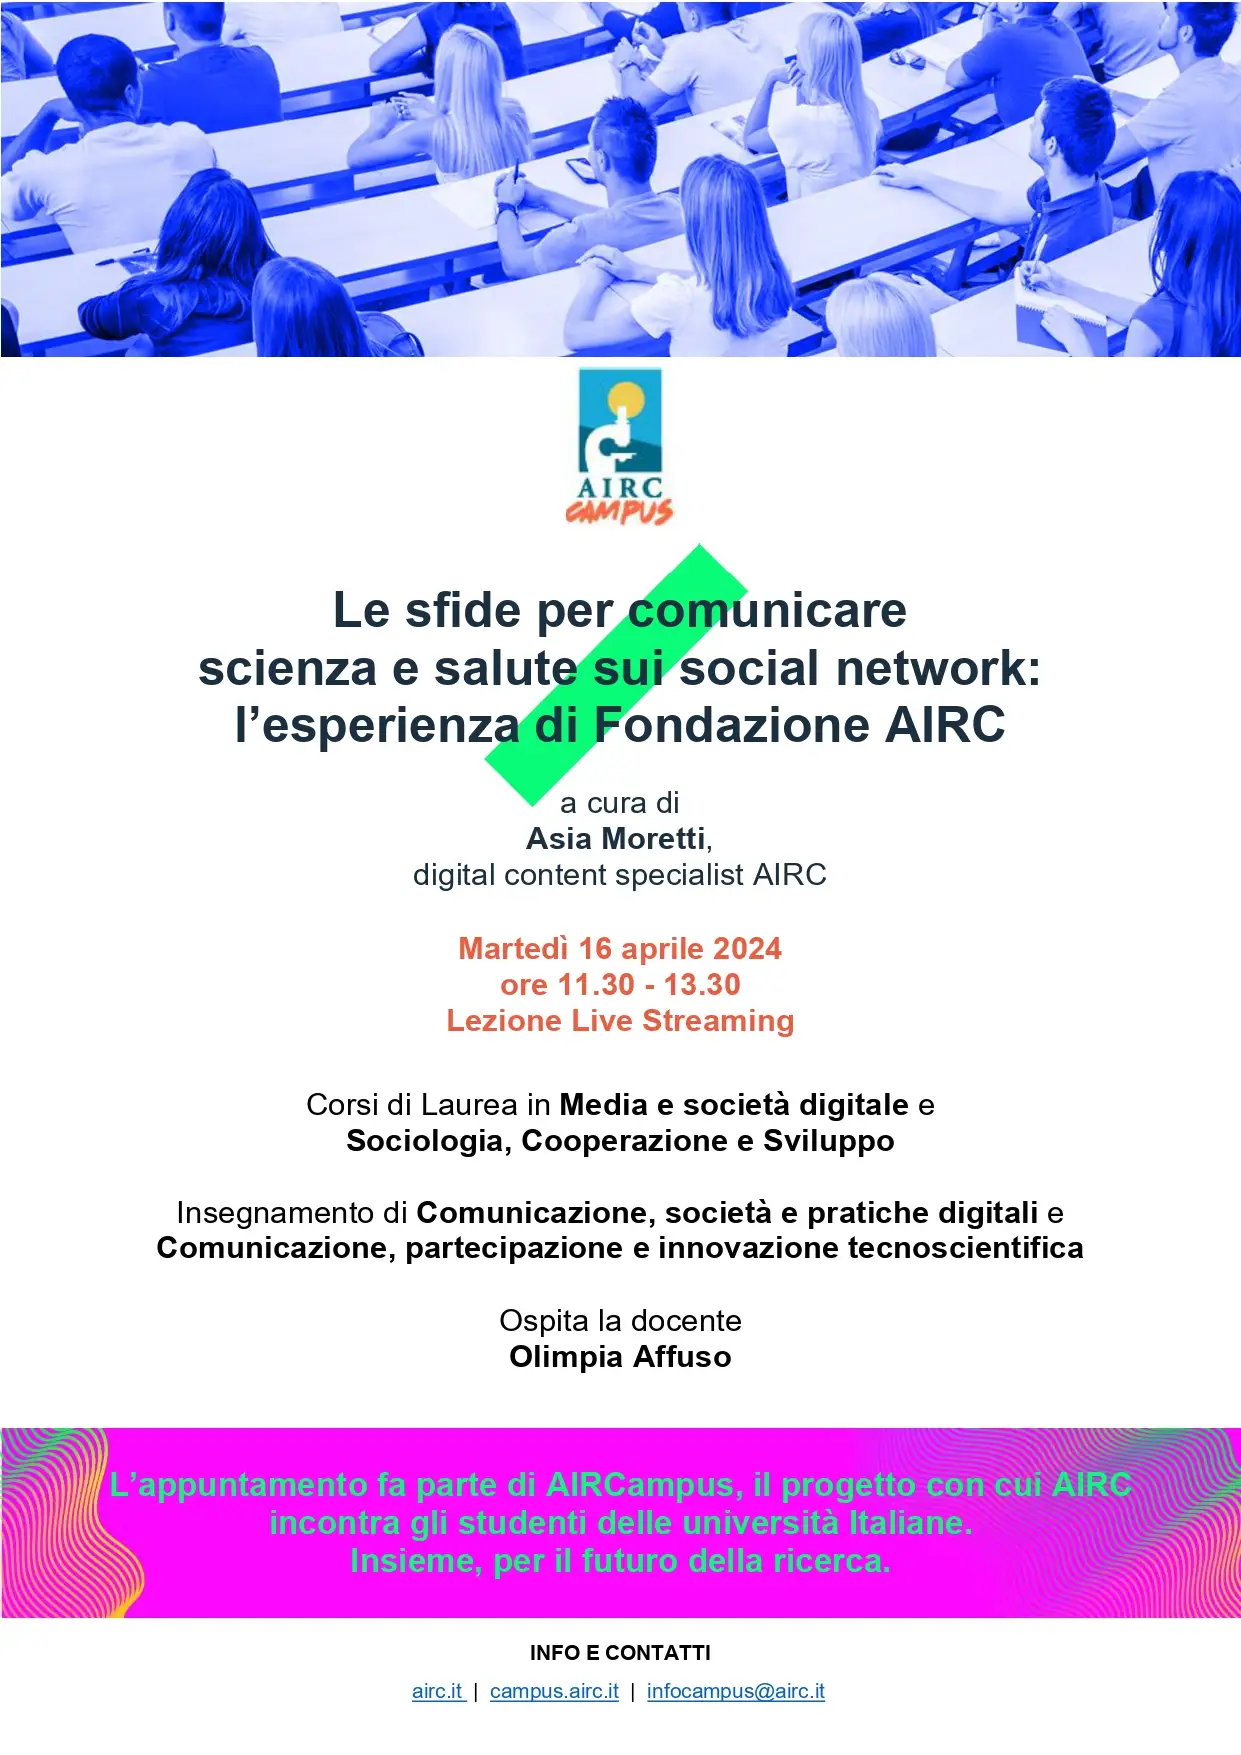 Le sfide per comunicare scienza e salute sui social network: l’esperienza di Fondazione AIRC